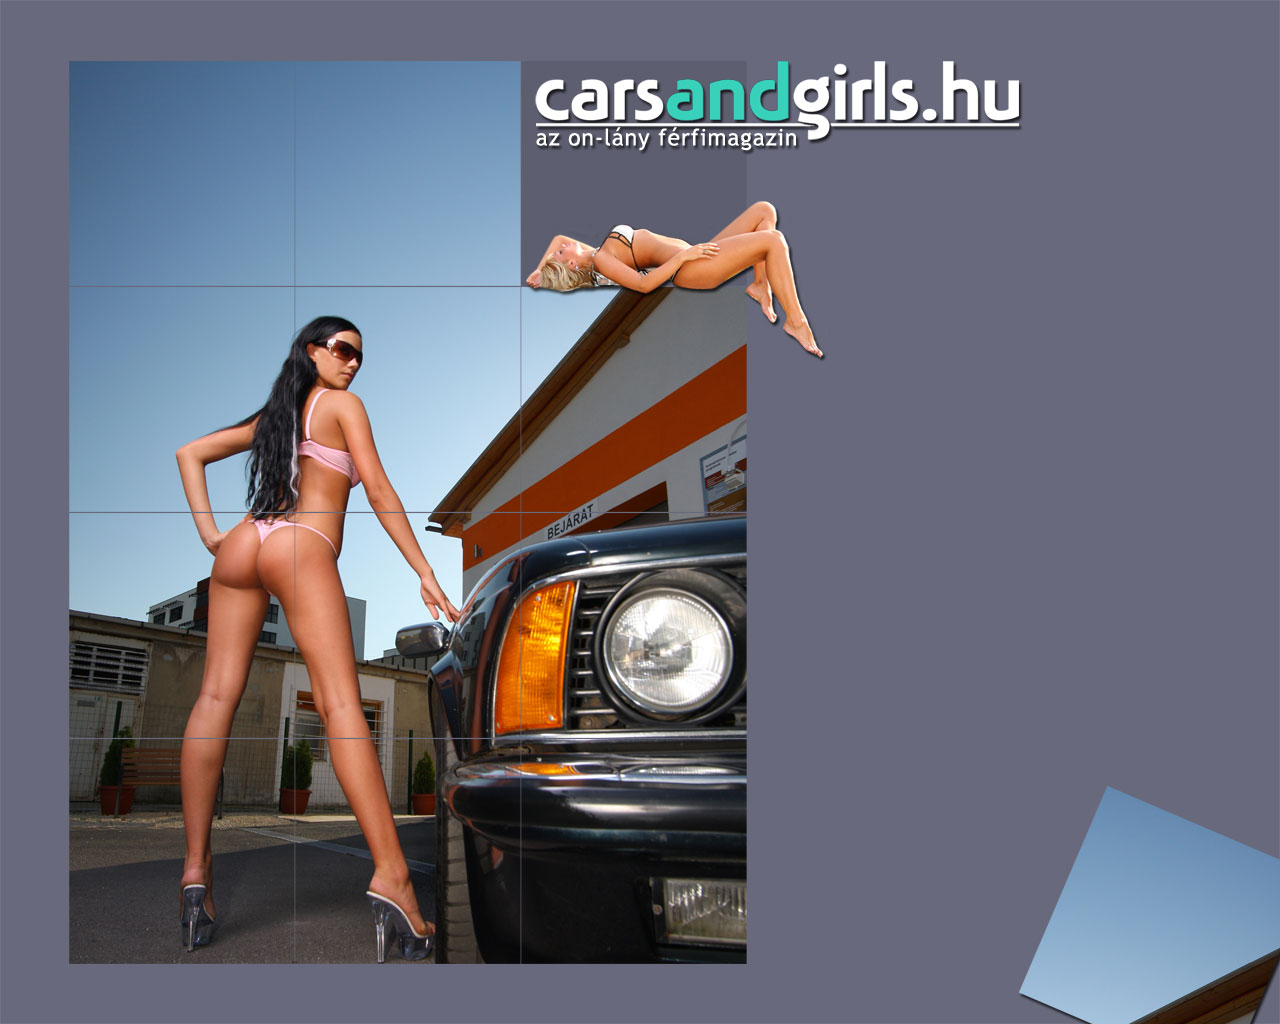 Download full size bikini Girls & Cars wallpaper / 1280x1024